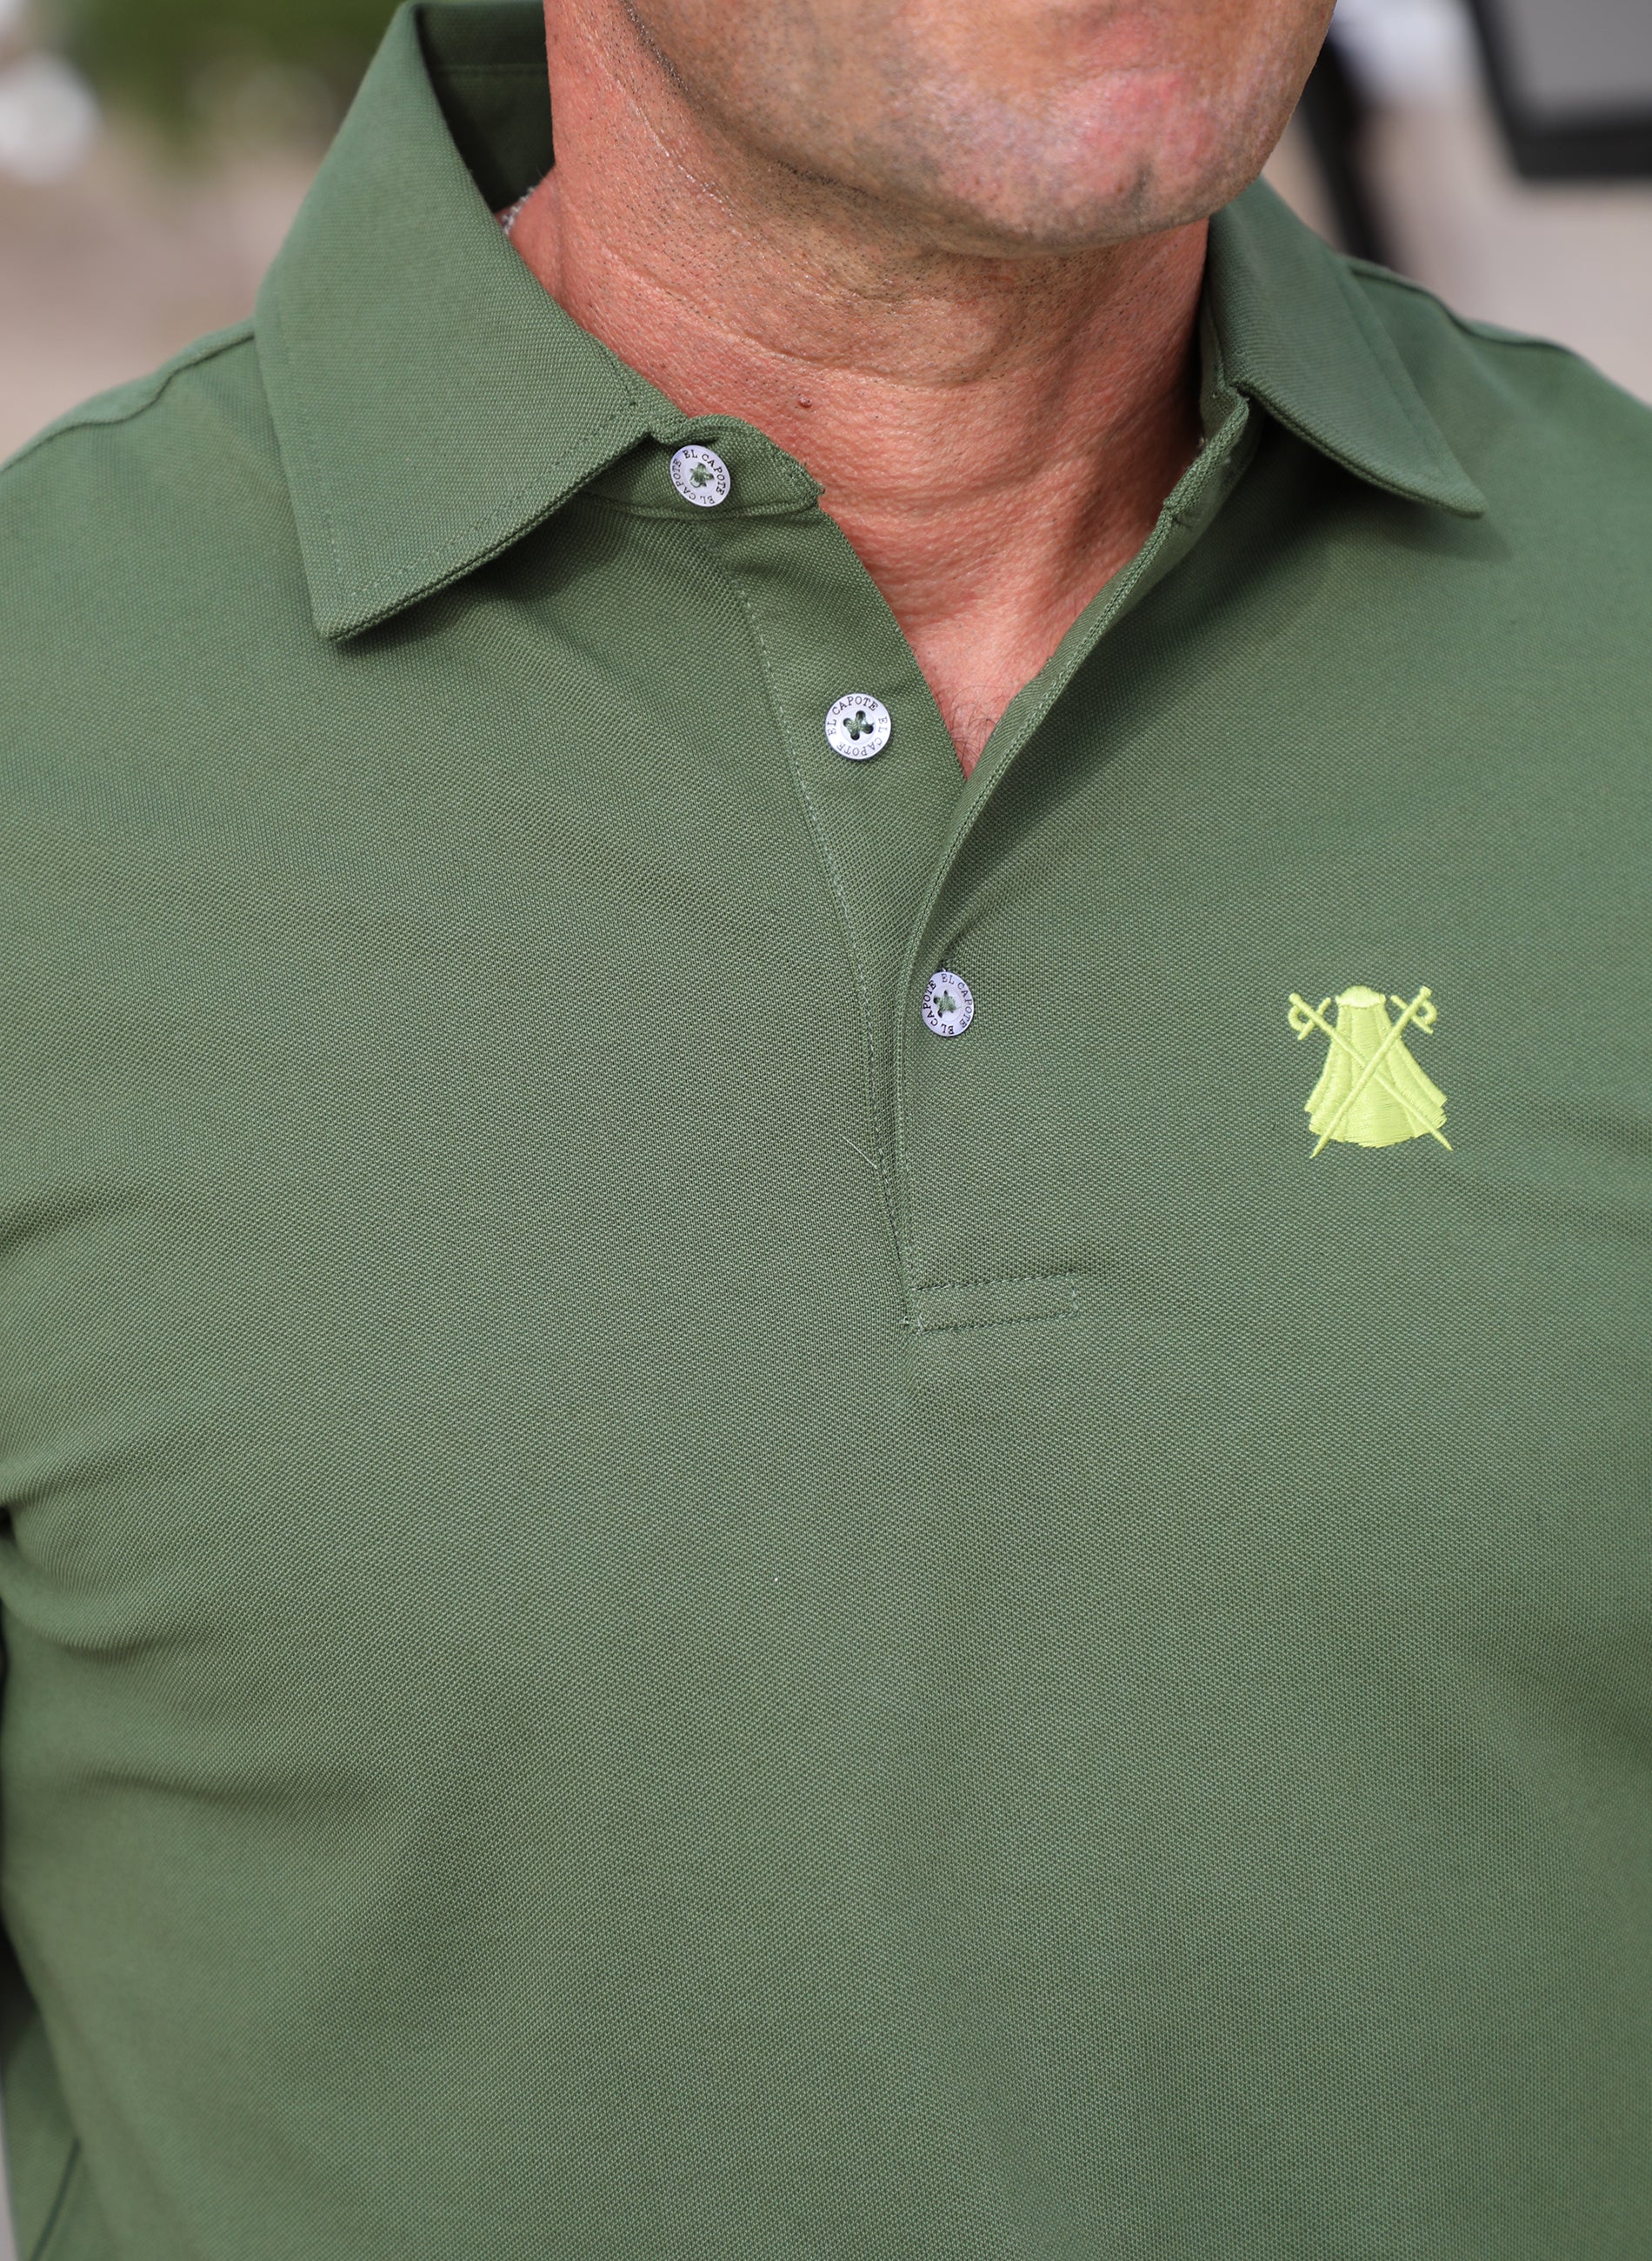 Herren-Poloshirt aus technischem Stoff in schlichtem Grün